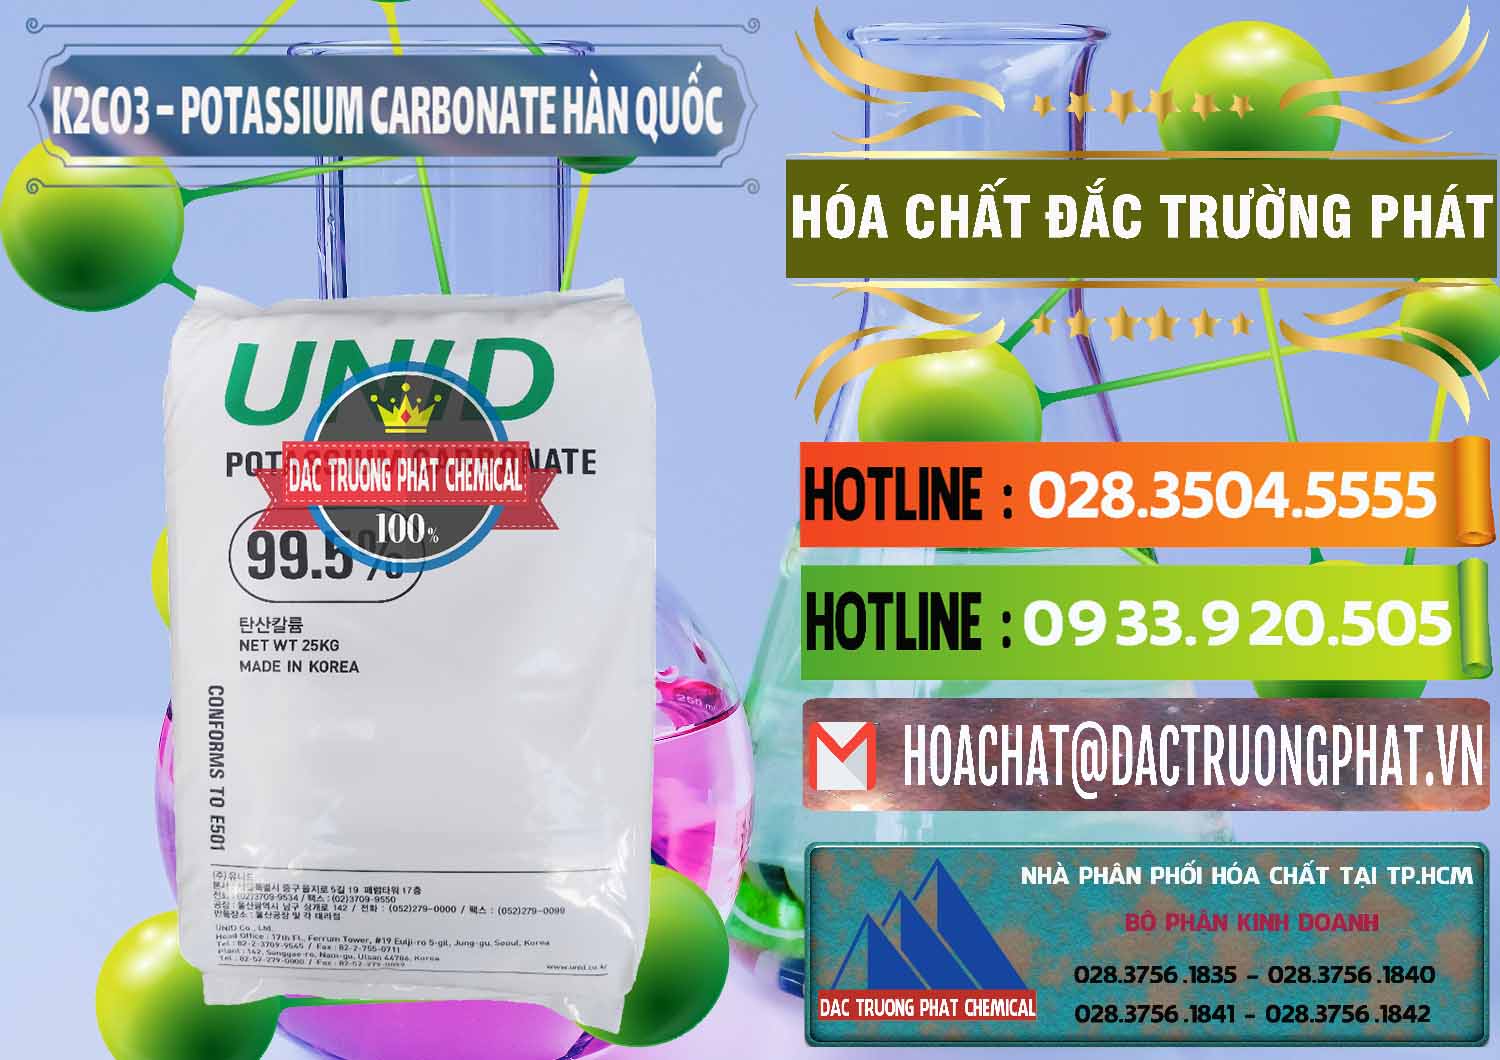 Cty chuyên bán & cung cấp K2Co3 – Potassium Carbonate Unid Hàn Quốc Korea - 0081 - Công ty chuyên nhập khẩu & phân phối hóa chất tại TP.HCM - cungcaphoachat.com.vn